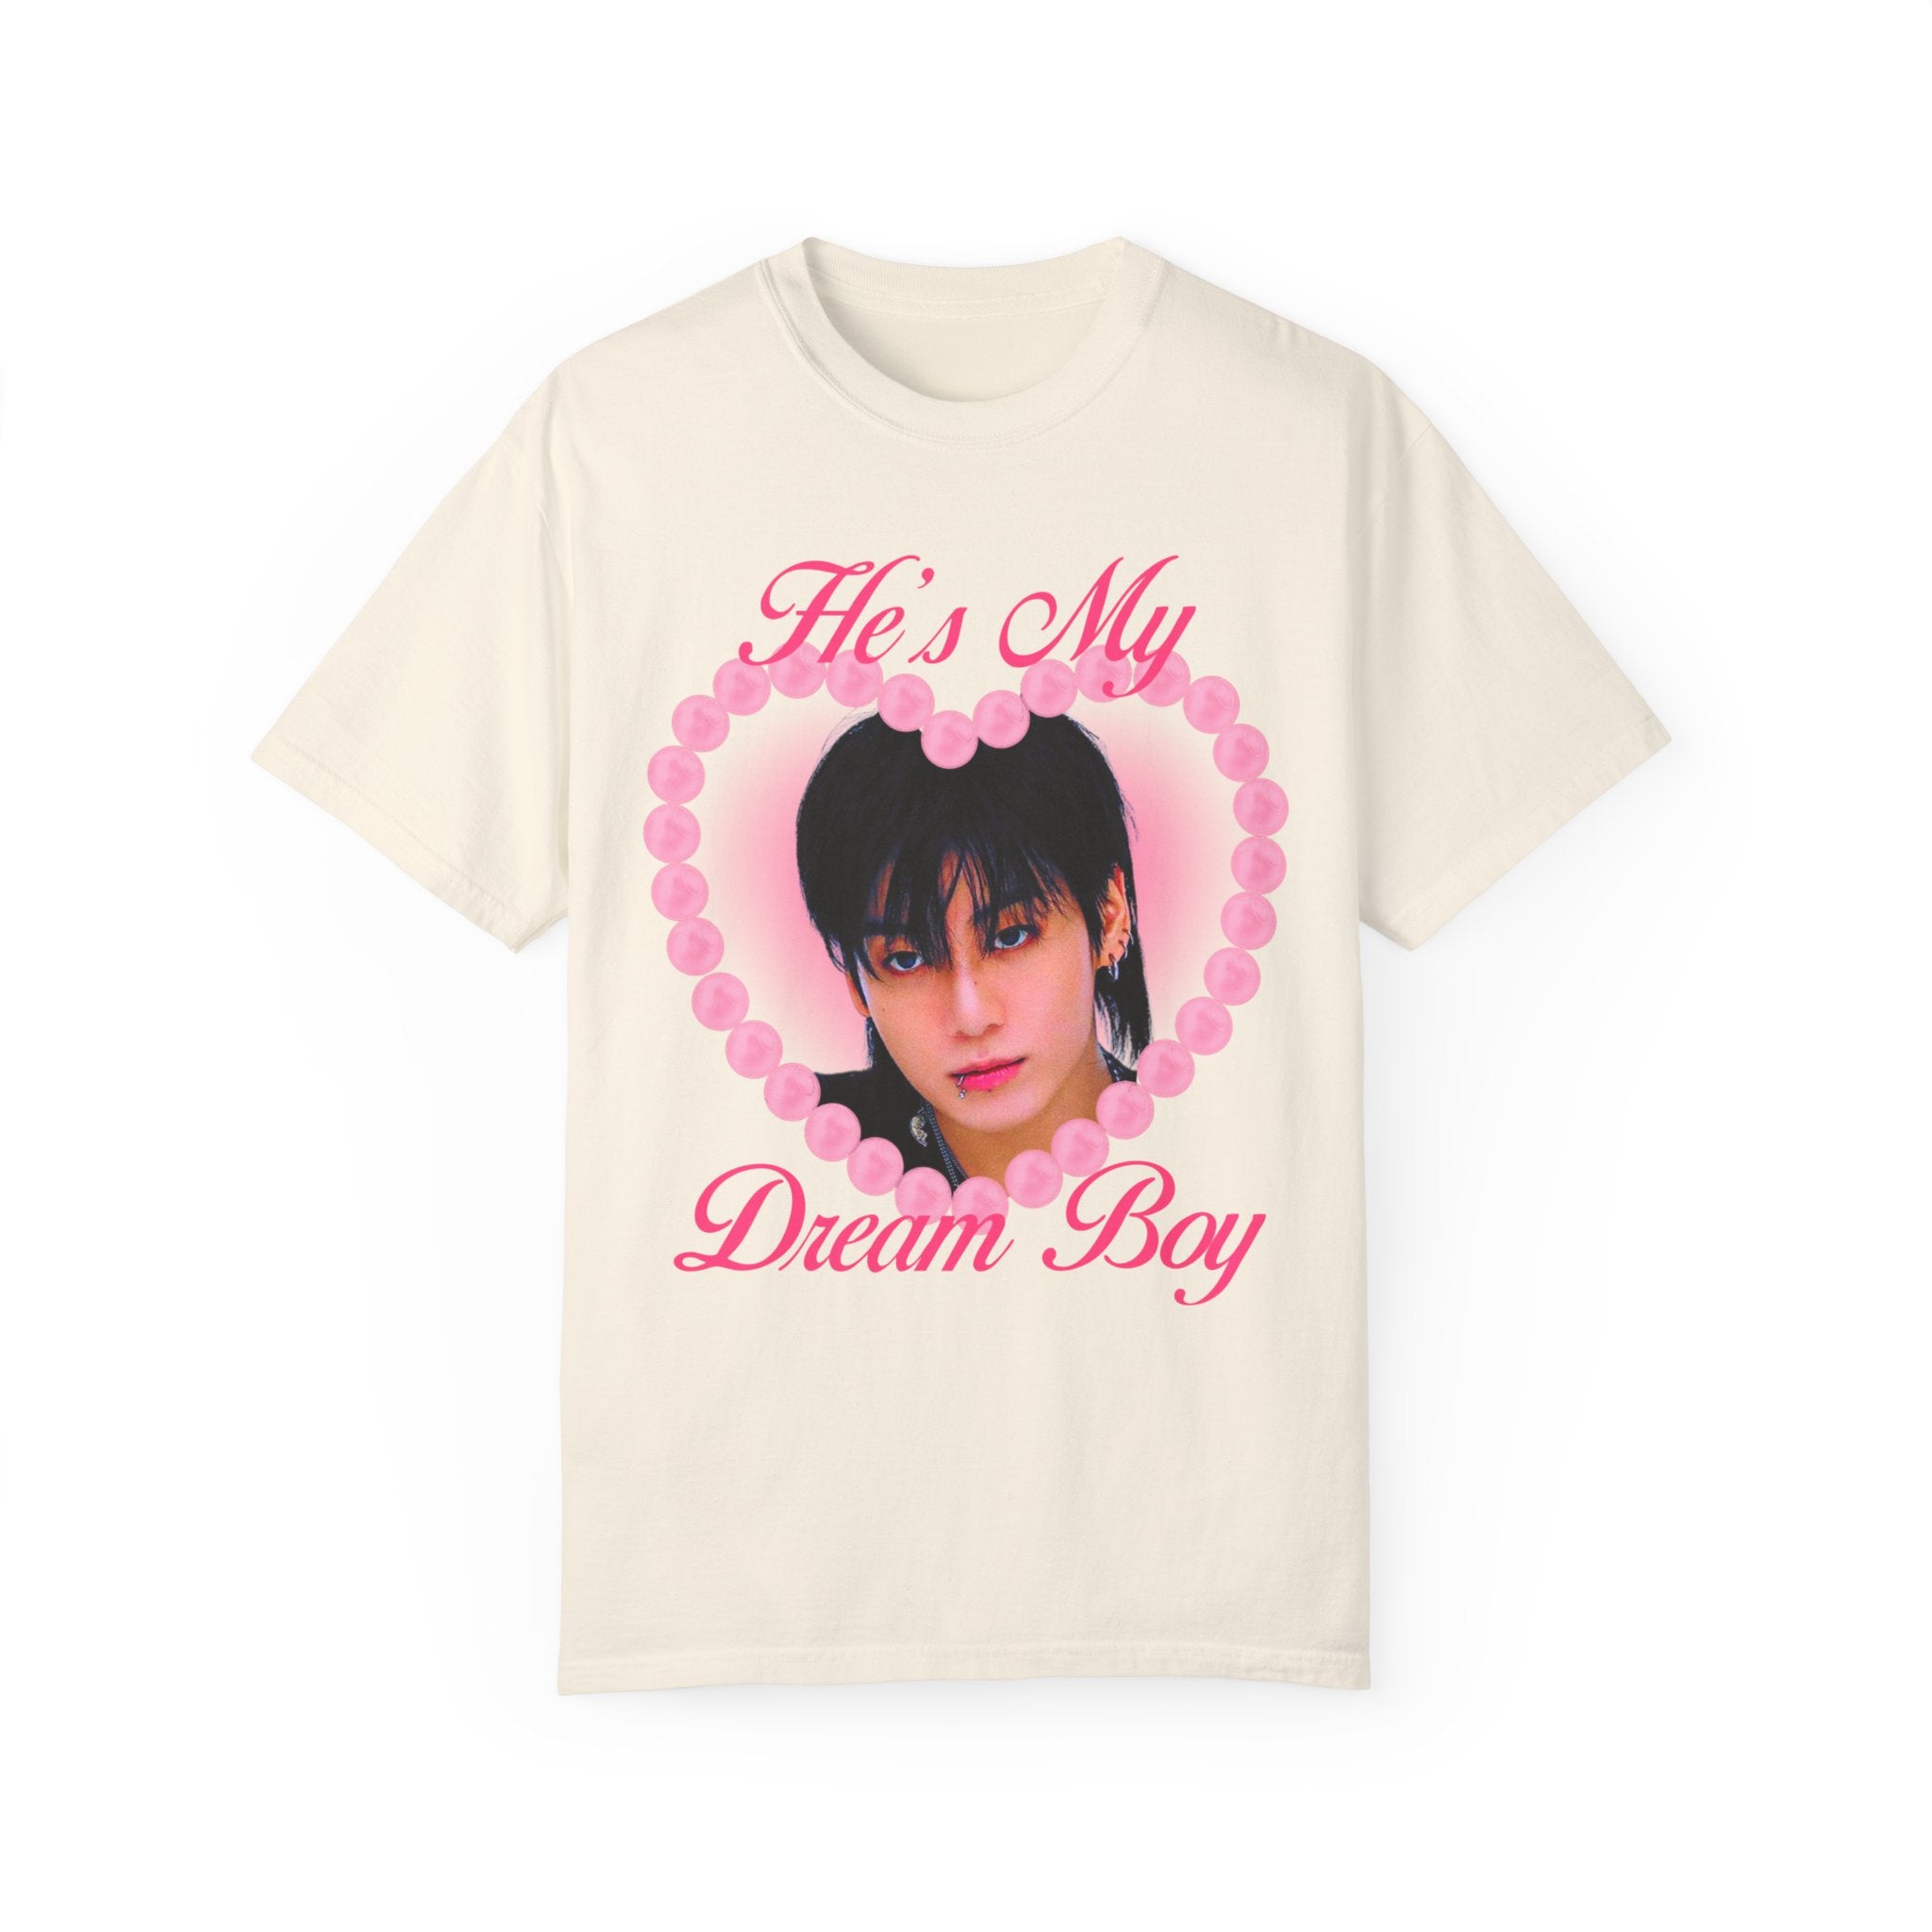 Jungkook Dream Boy Unisex Garment-Dyed T-shirt